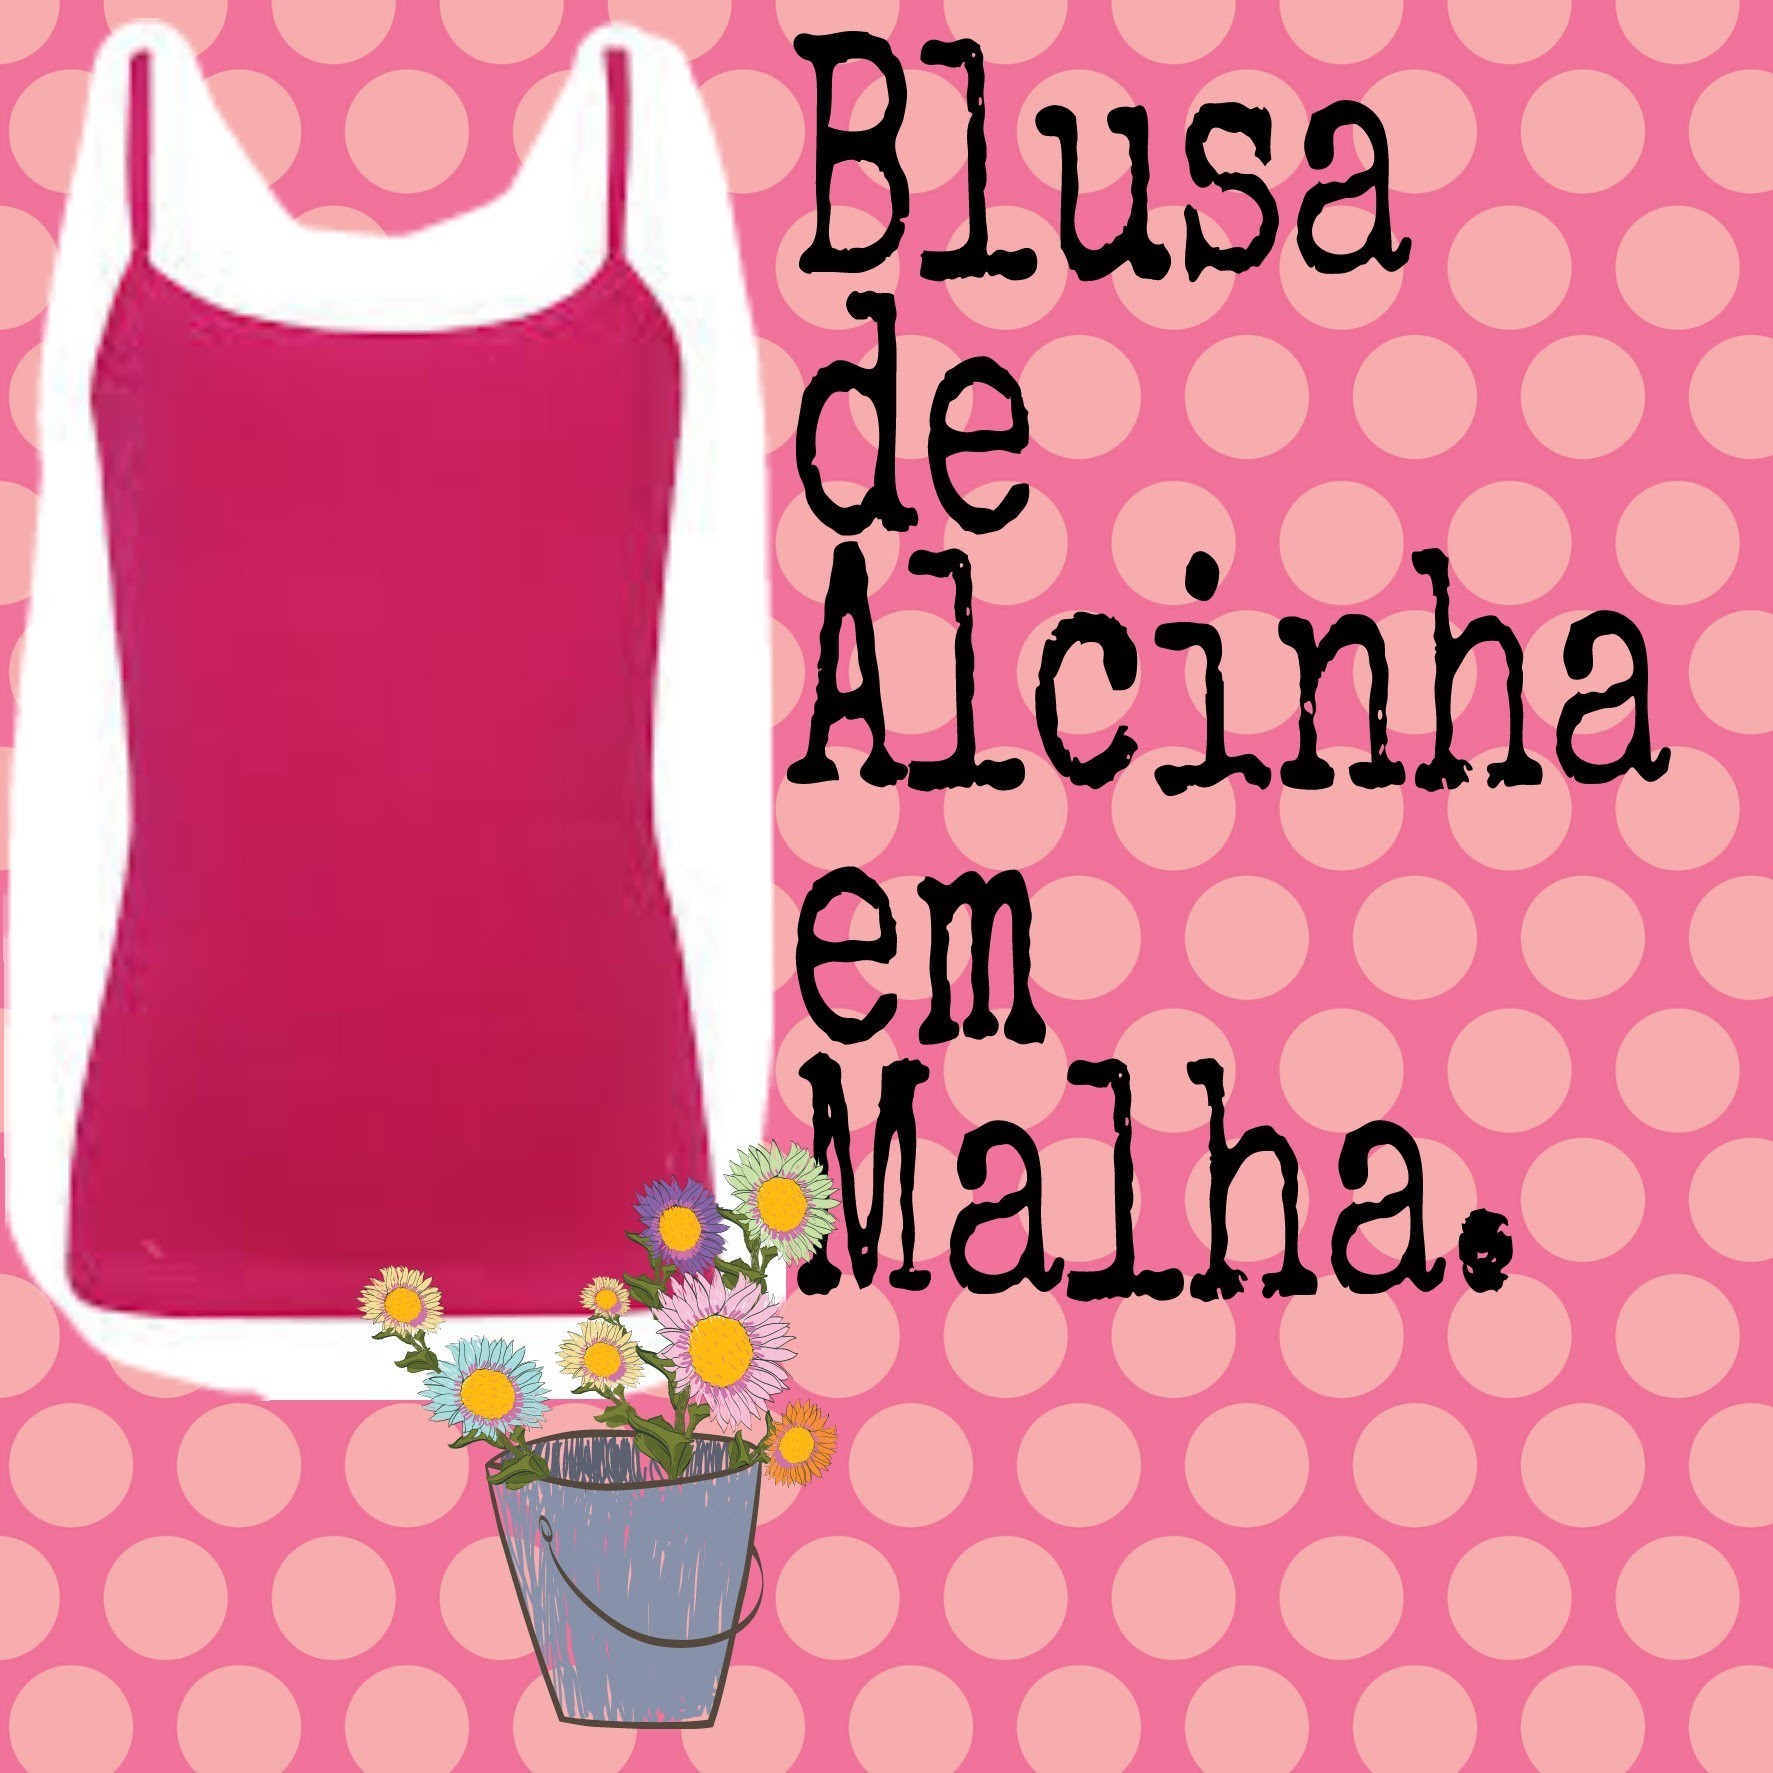 Blusa de Alcinha em Malha. DIY  Modelagem